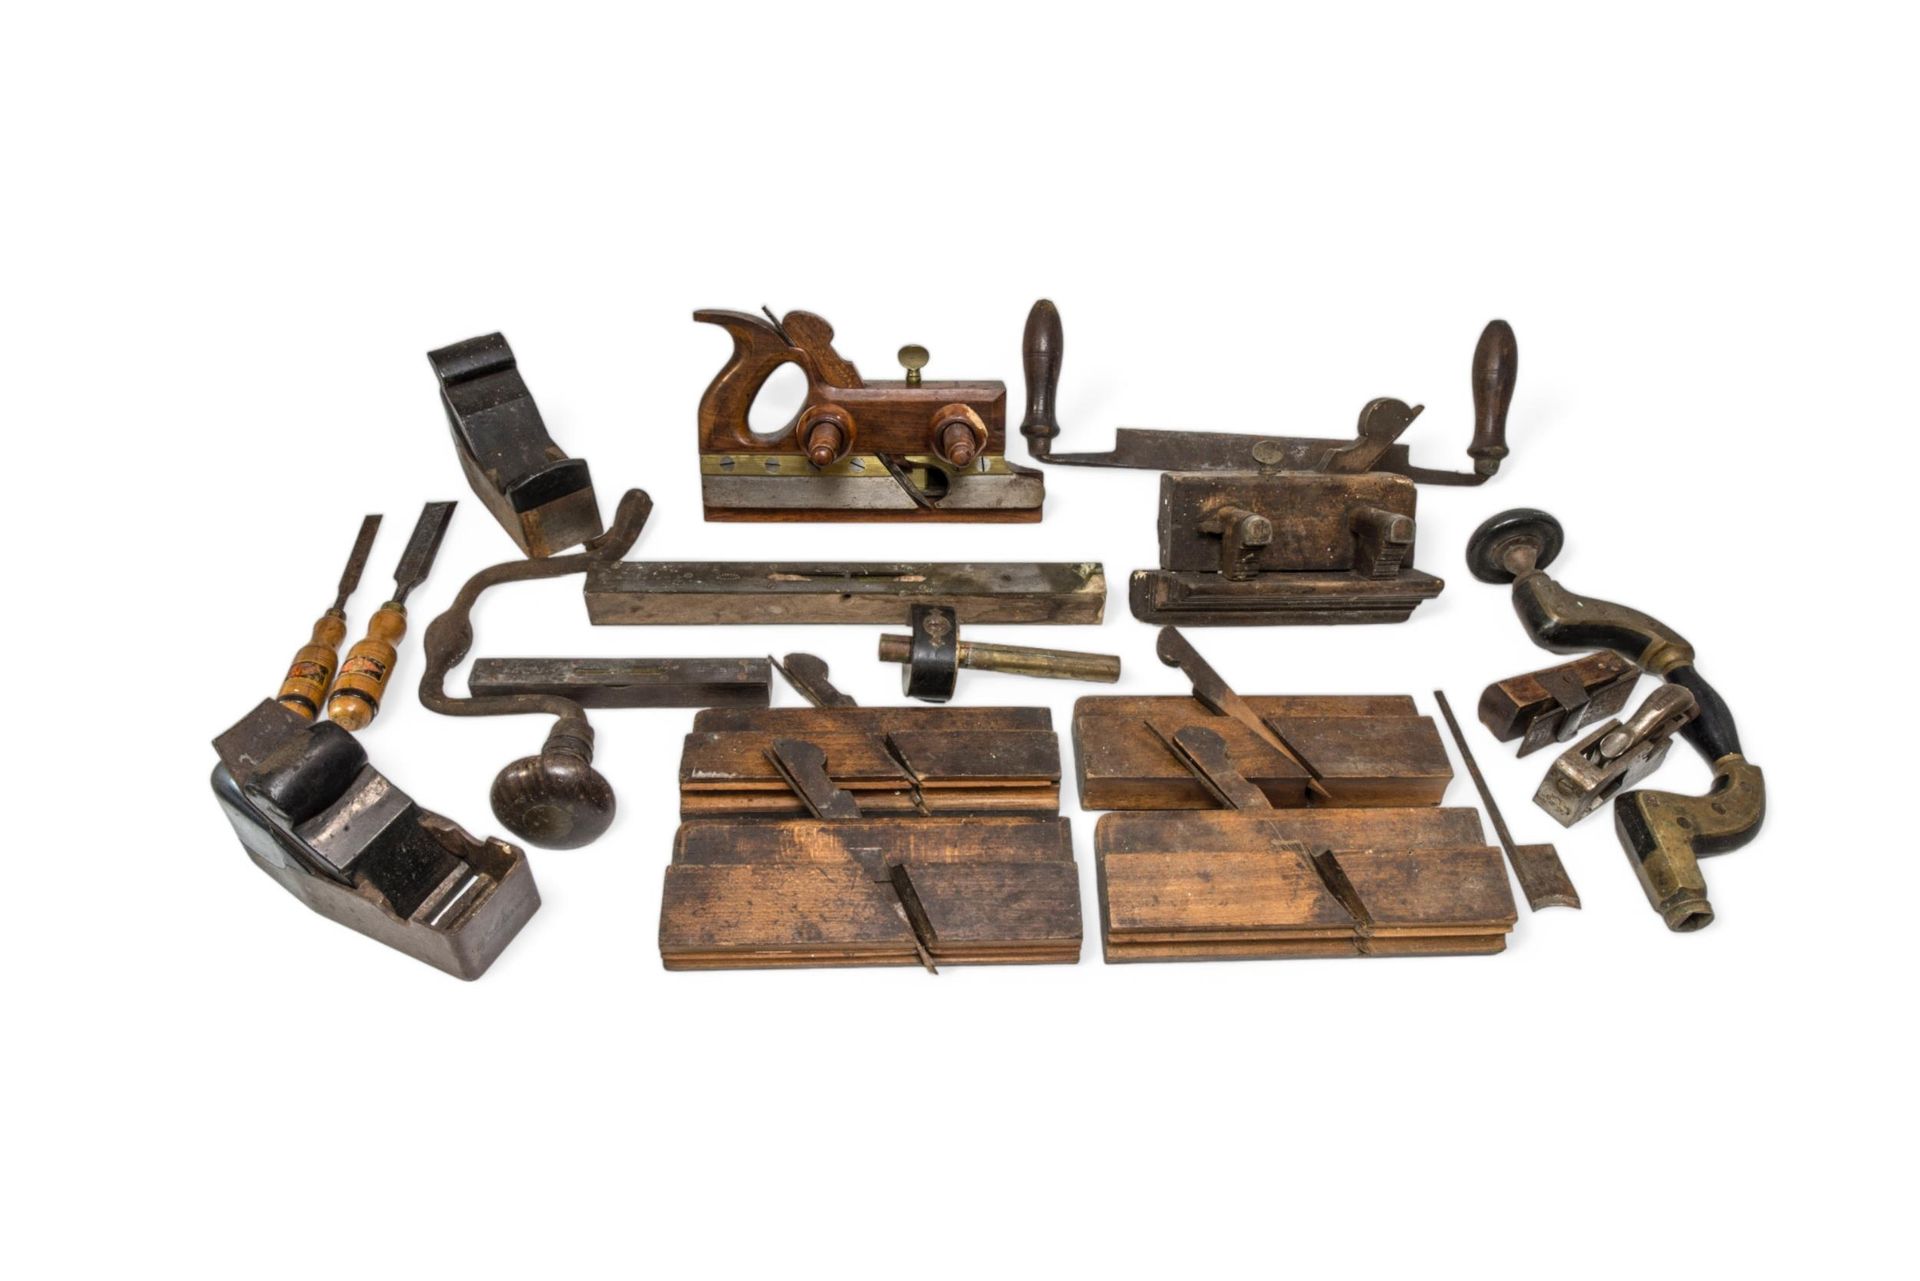 Null 一把 19 世纪的成型刨、其他各种刨子、一个支架、一个辐条刨和其他工具。